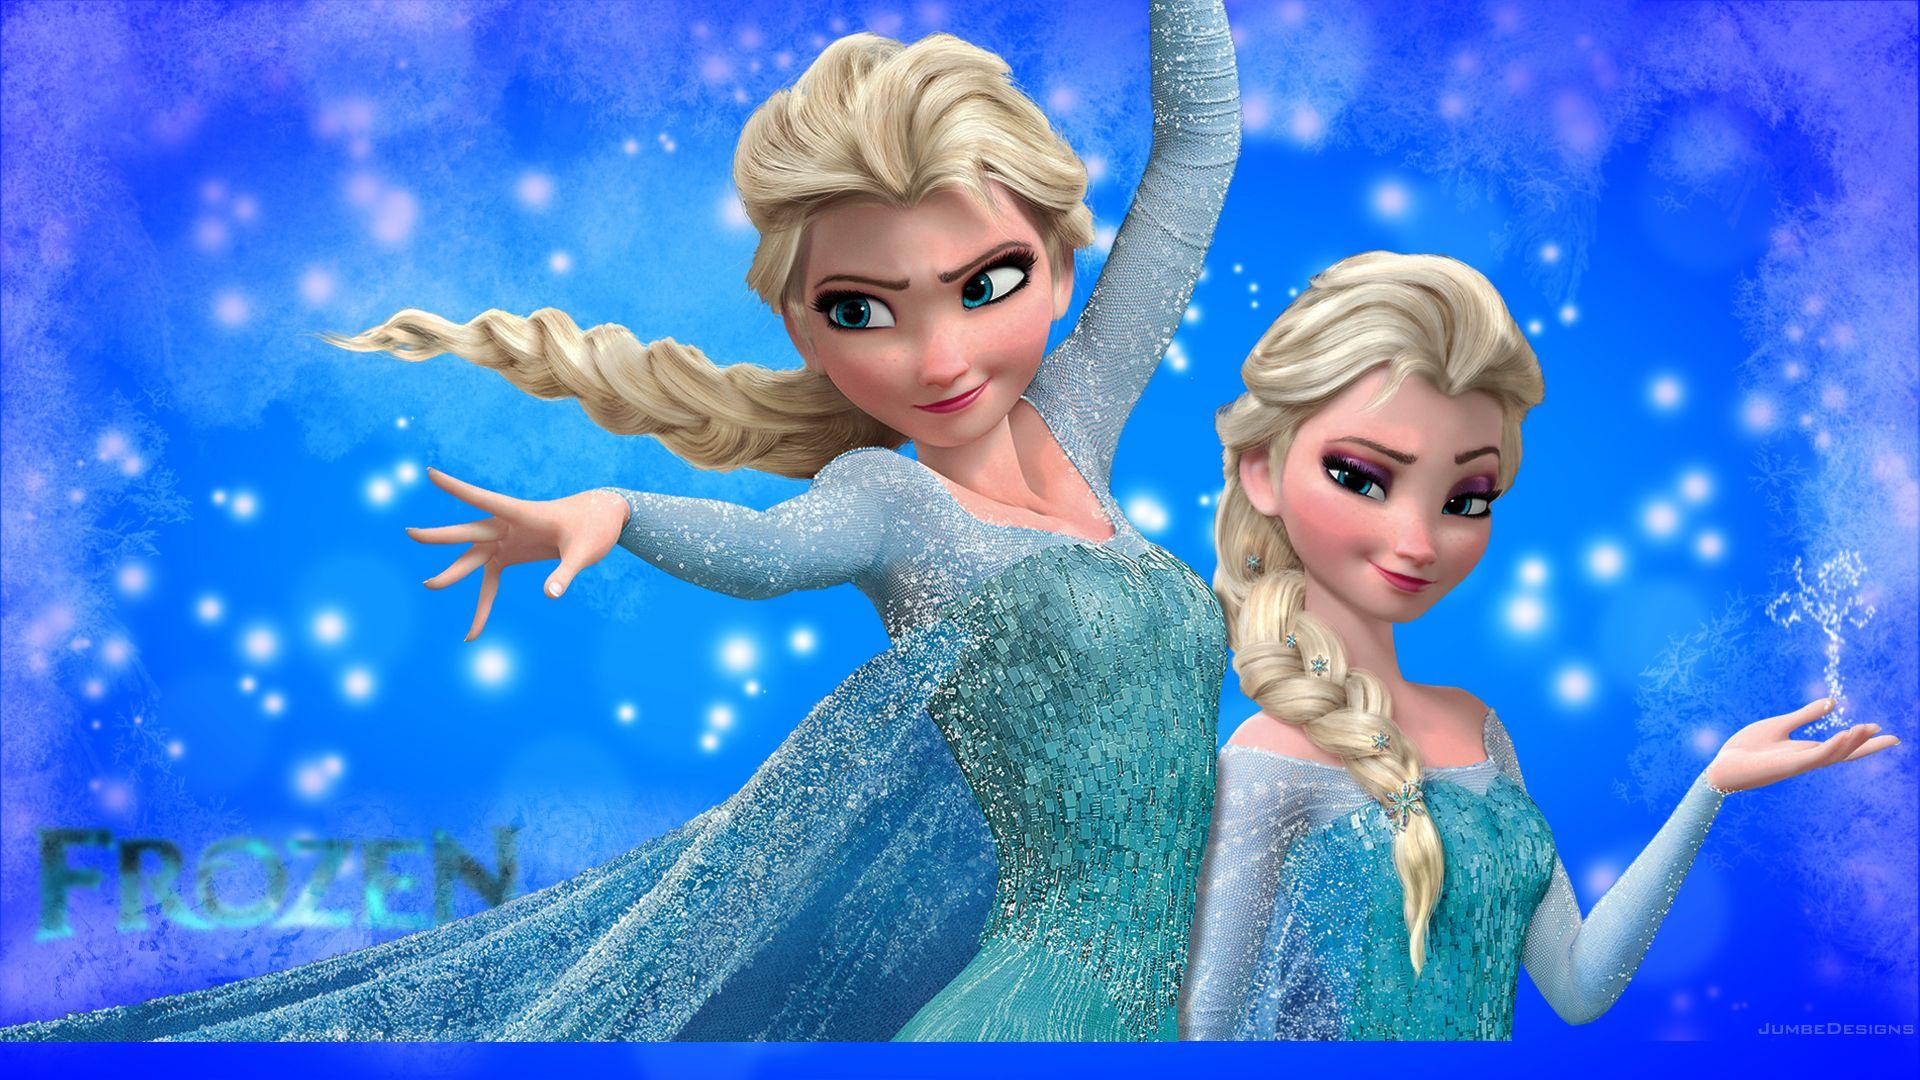 Elsa, The Snow Queen by JumbeDesigns. Elsa. Frozen